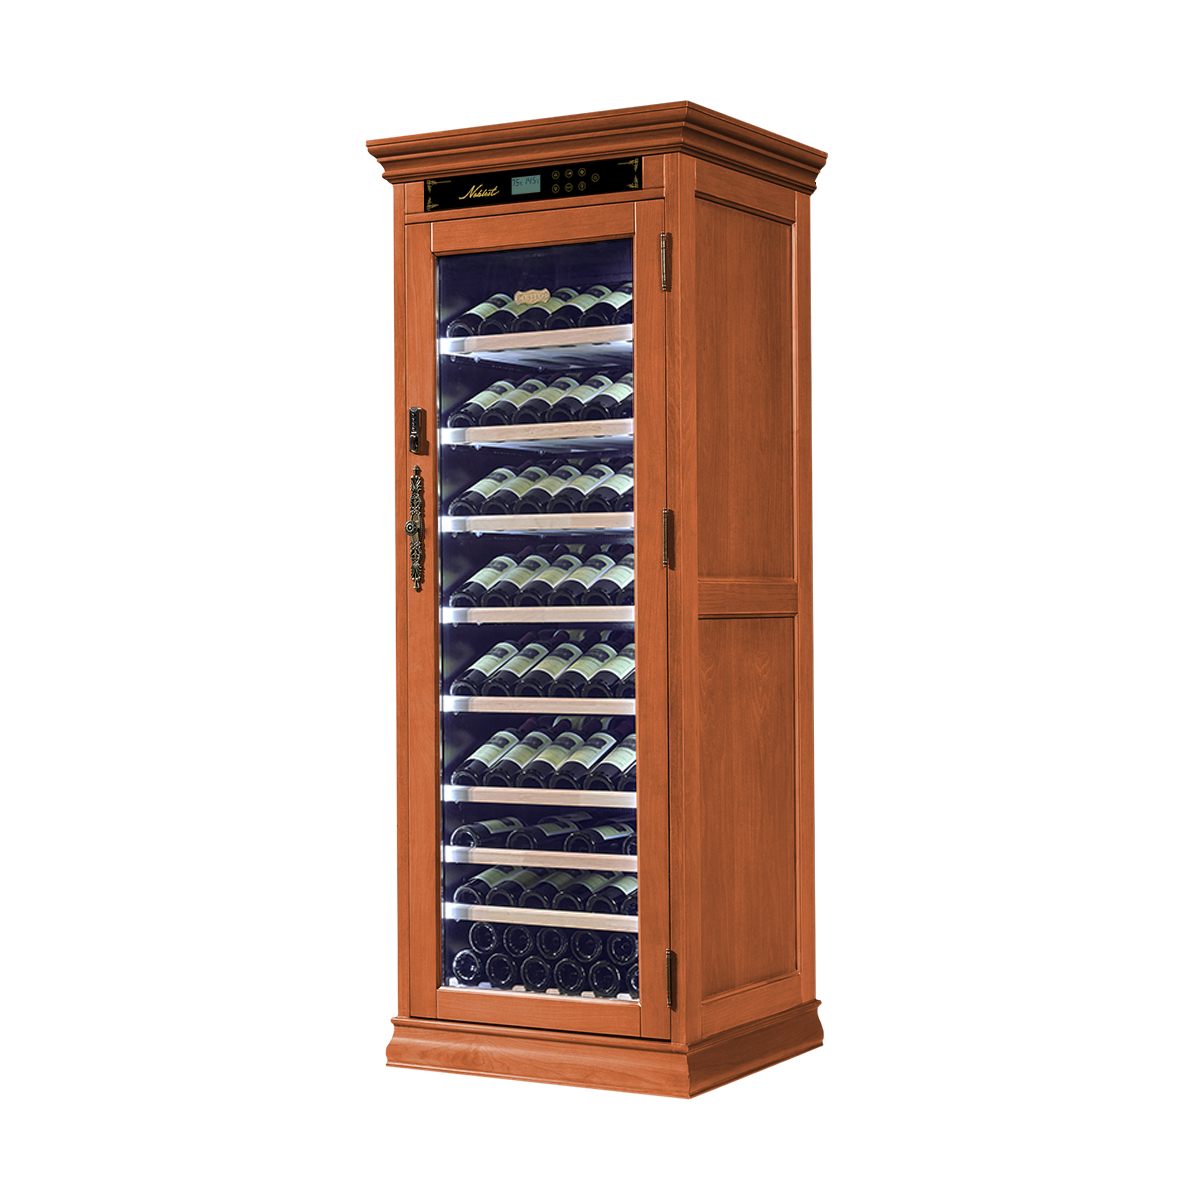 Винный шкаф однозонный отдельностоящий Libhof Noblest NR-102 Red Cherry 750х680х1880мм на 102 бутылки из красной вишни с белой подсветкой